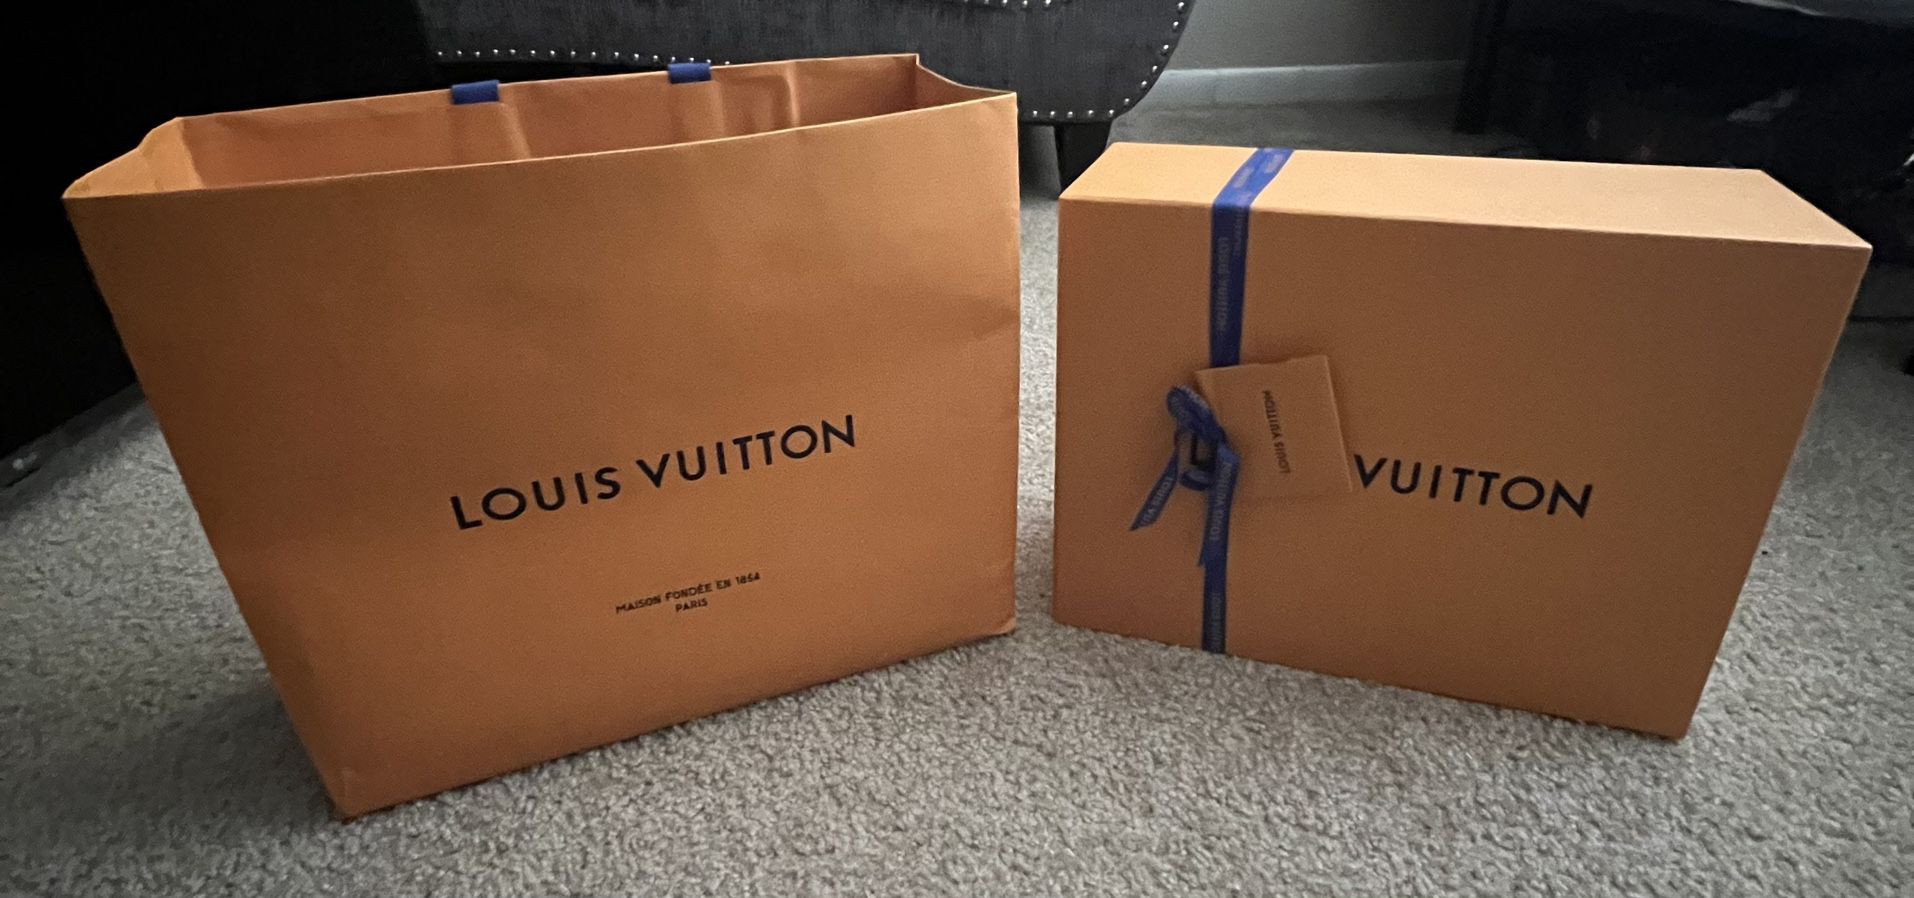 LOUIS VUITTON Model 2018 Pair of sneakers V.N.R in bla…